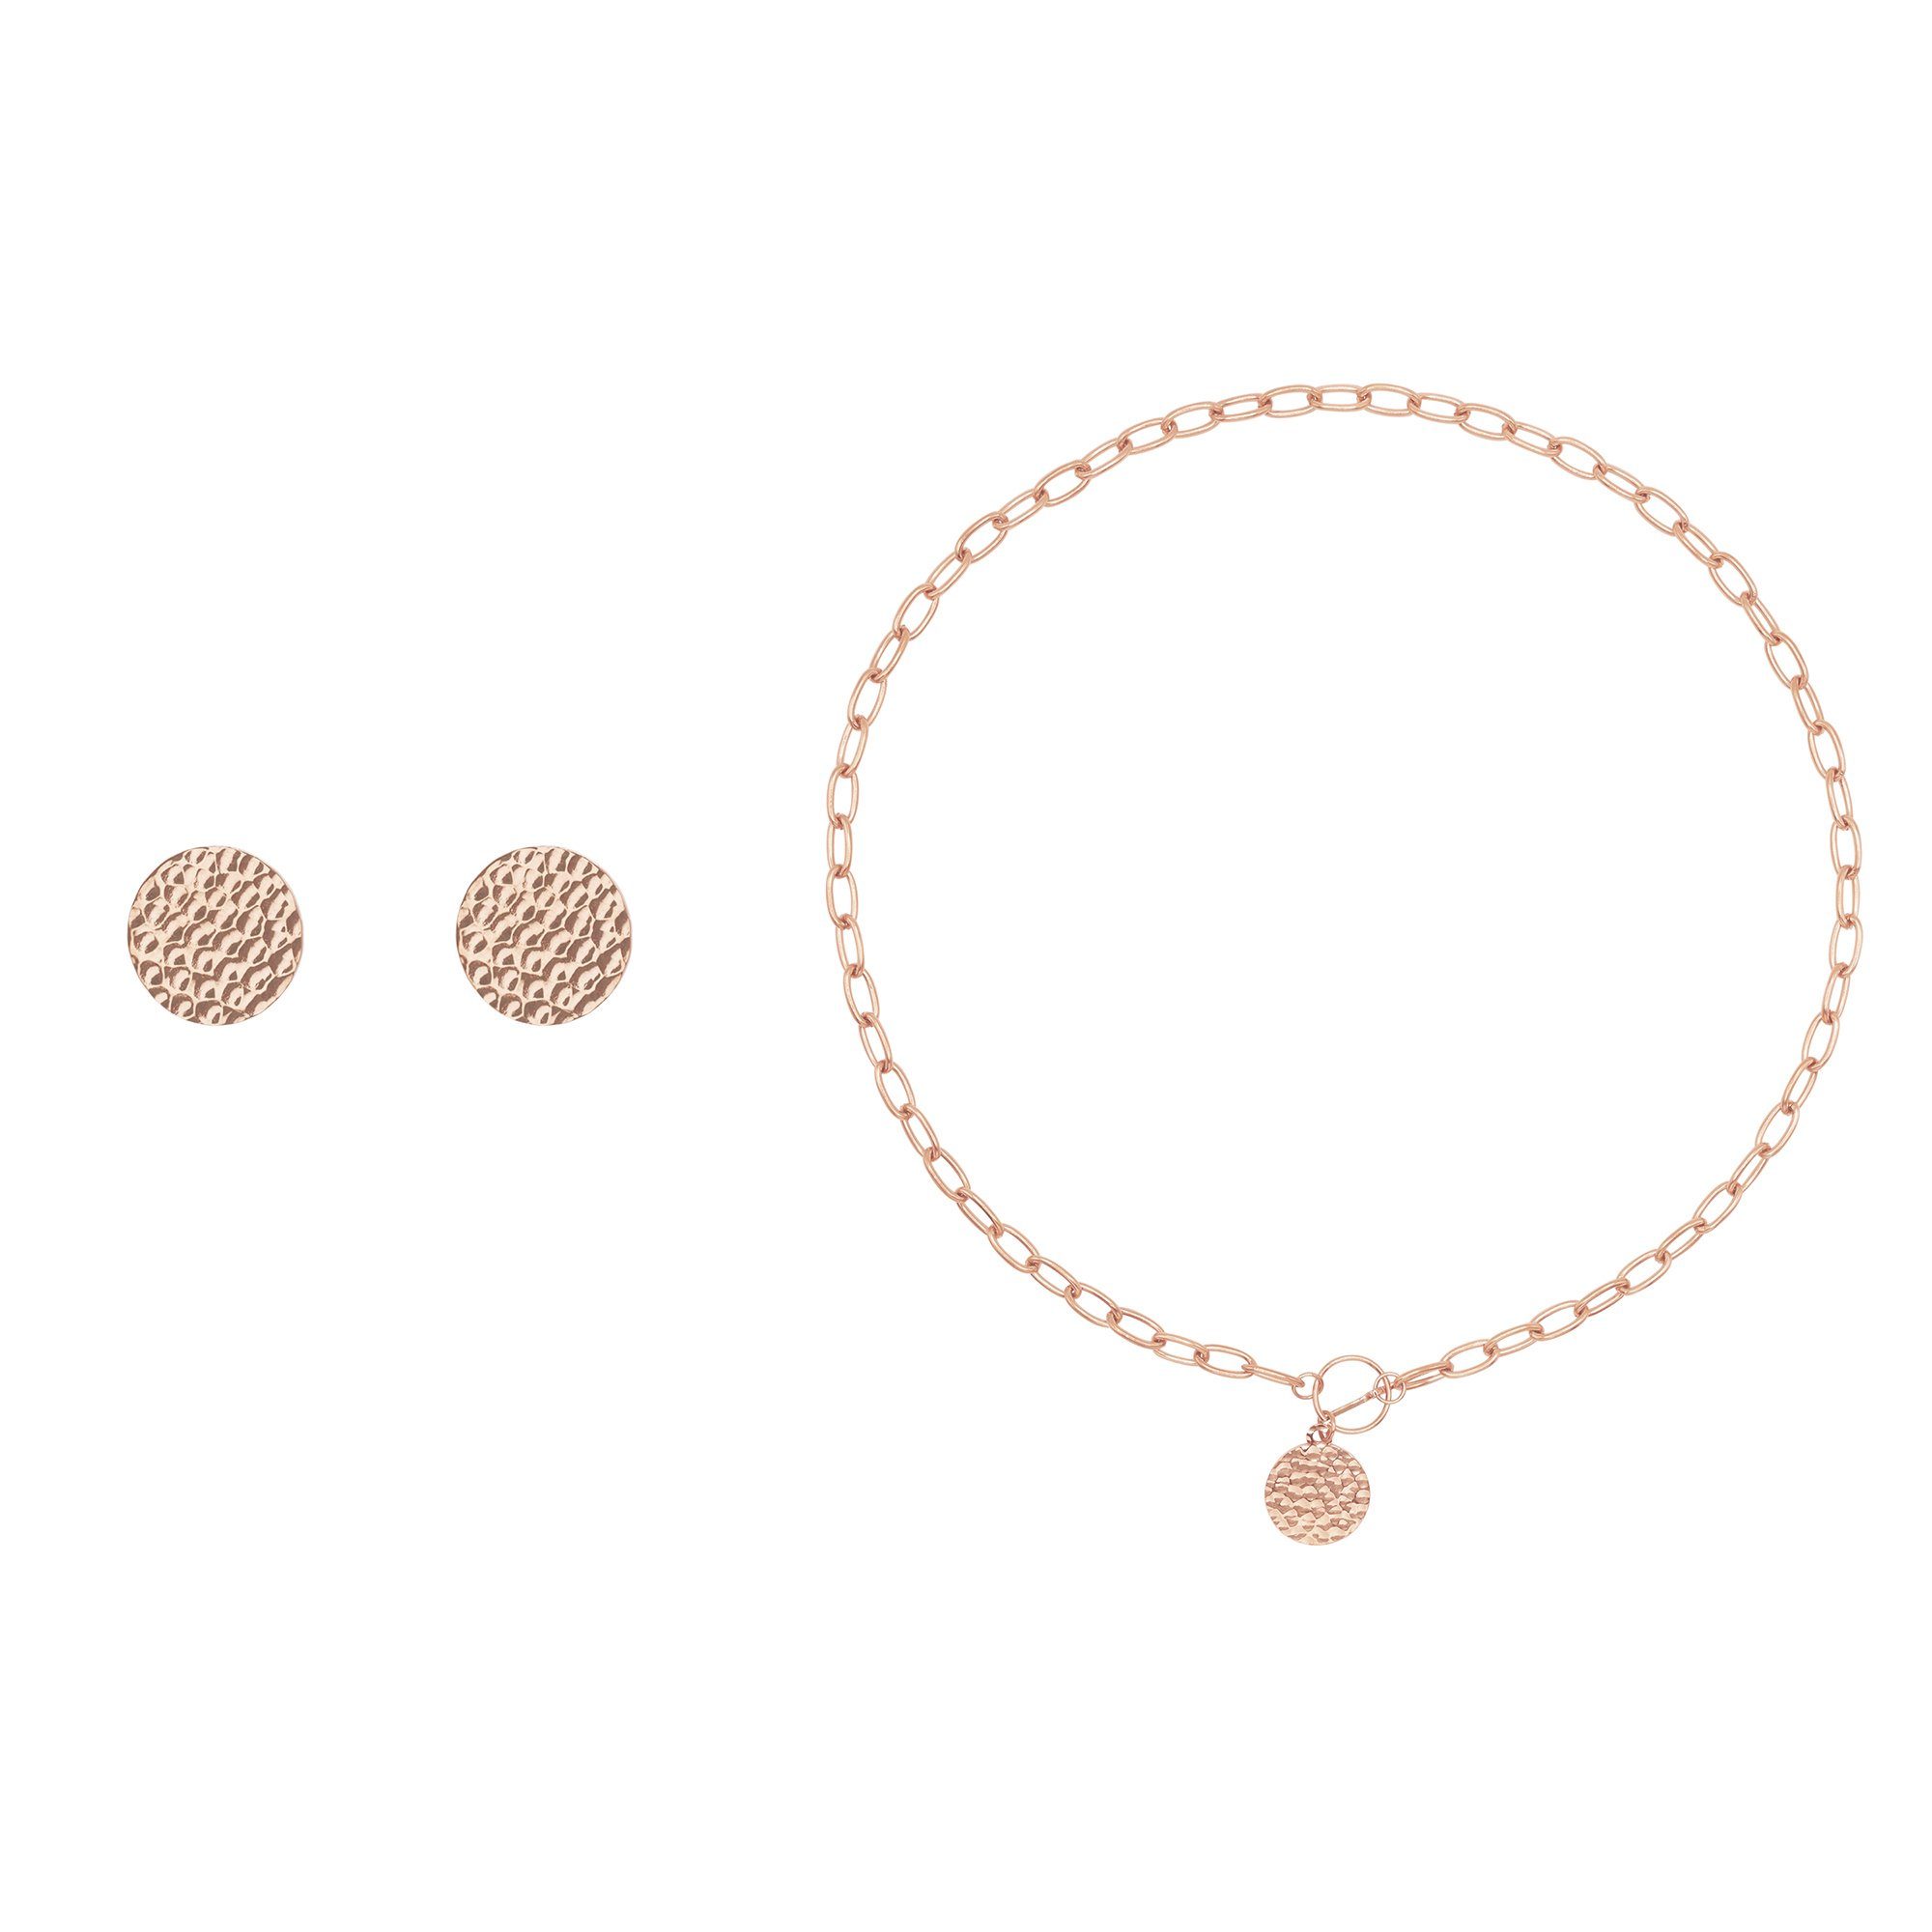 Heideman Collier Set Lucy rose goldfarben (inkl. Geschenkverpackung), Geschenkset Damen mit Halskette und Ohrring